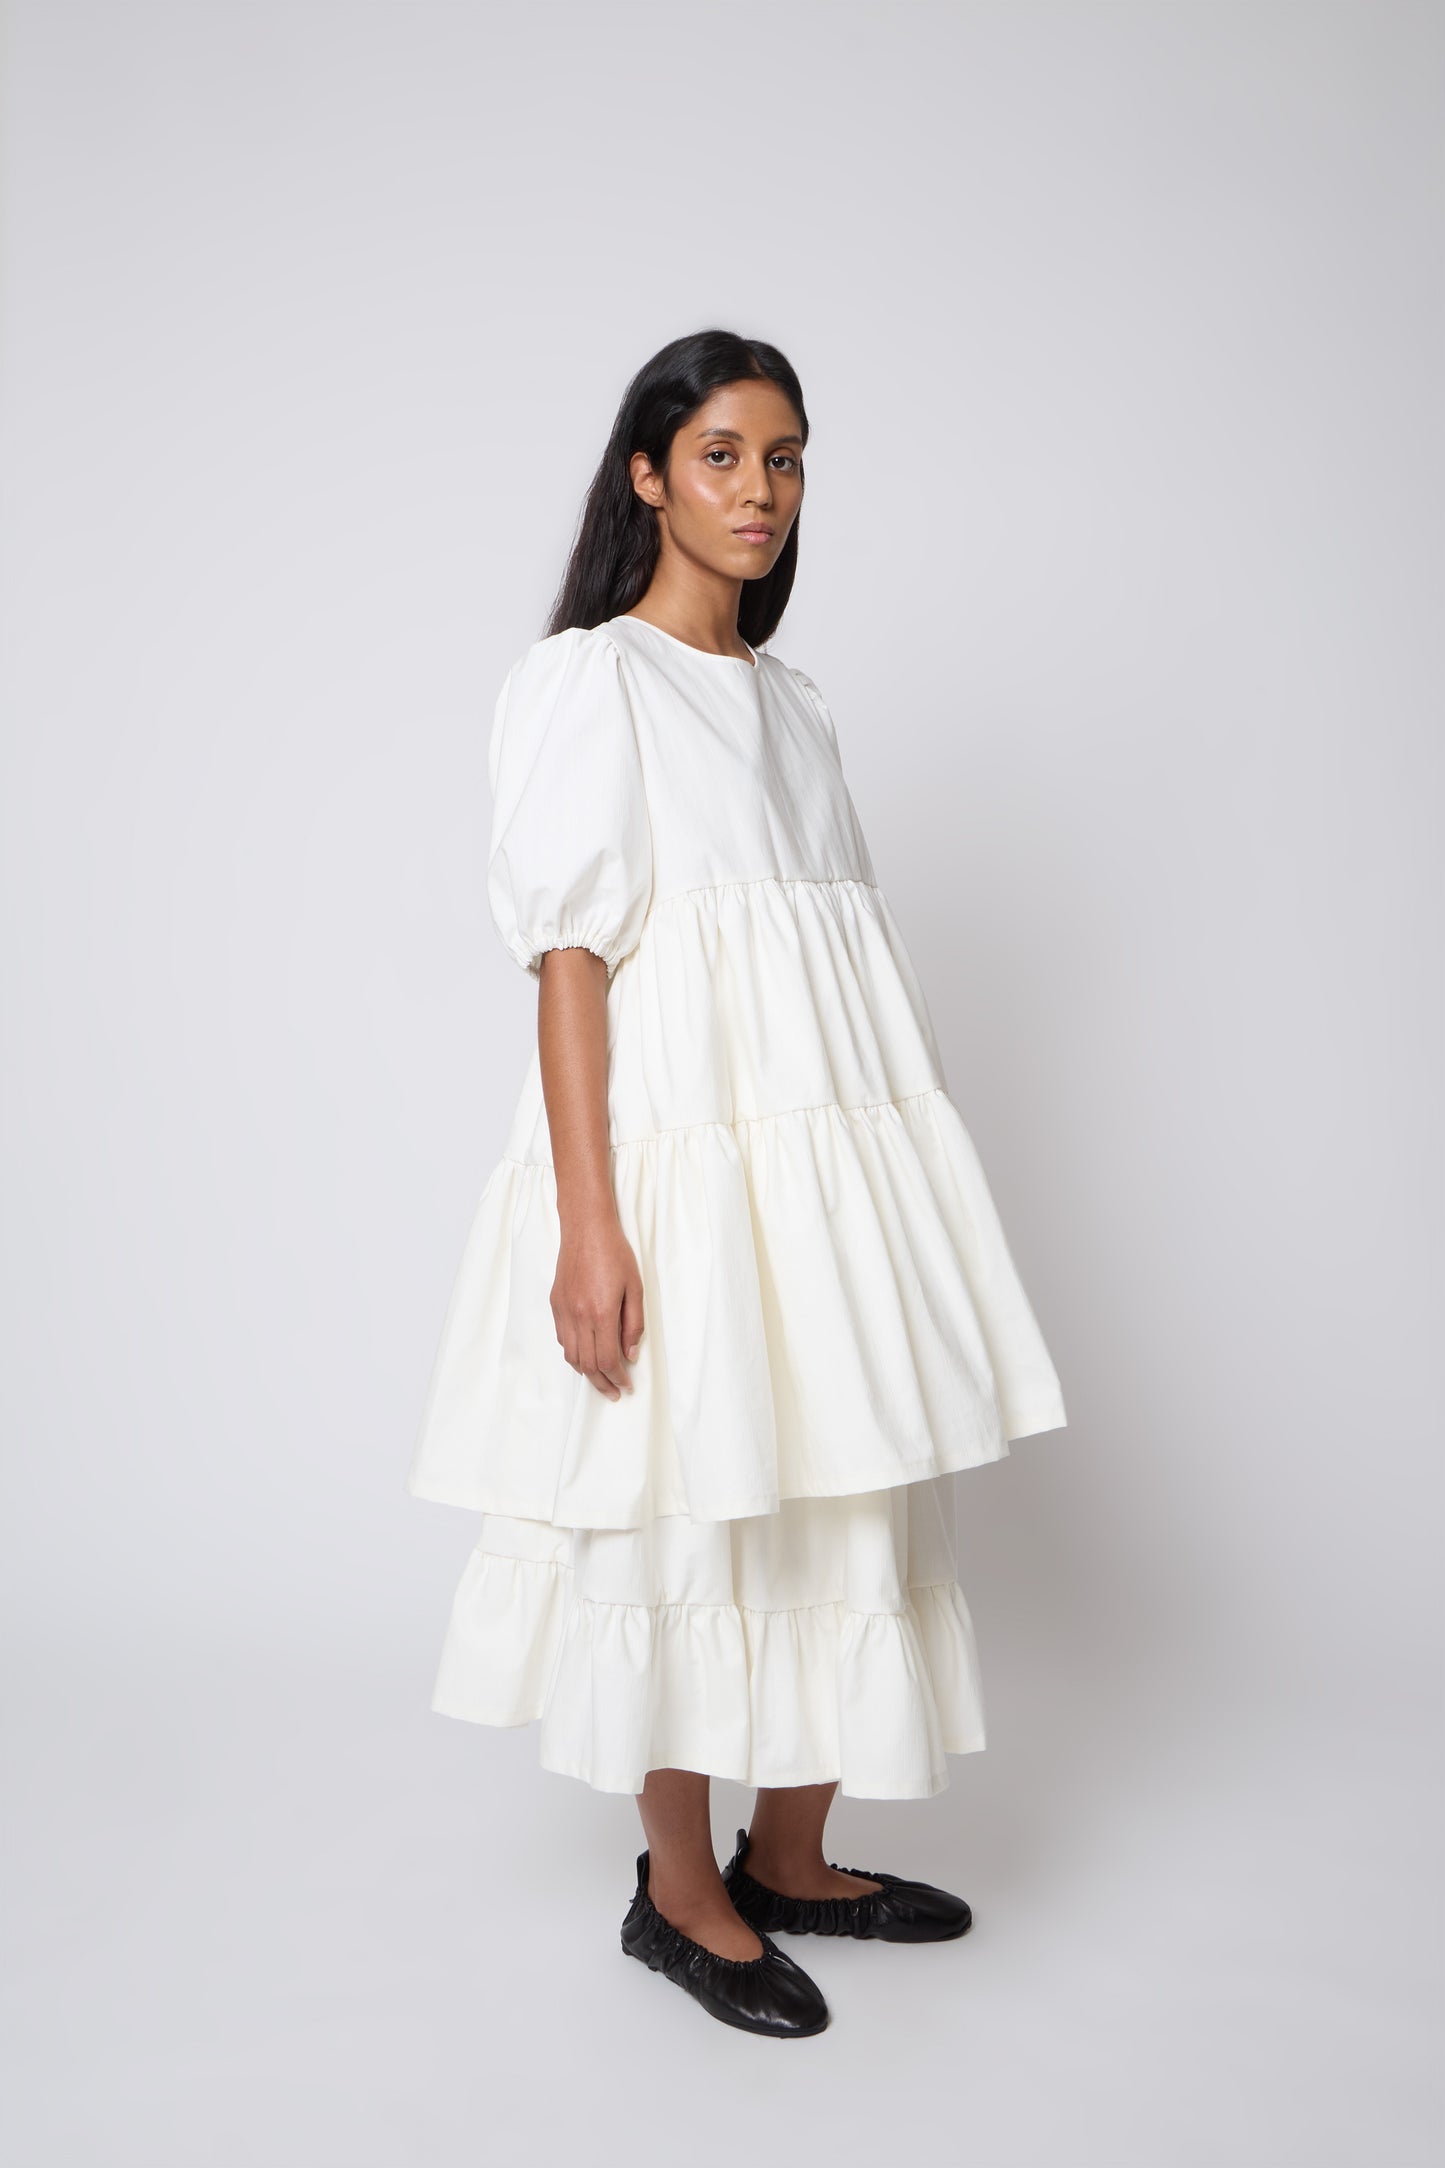 Margot Skirt in Warm White Cotton